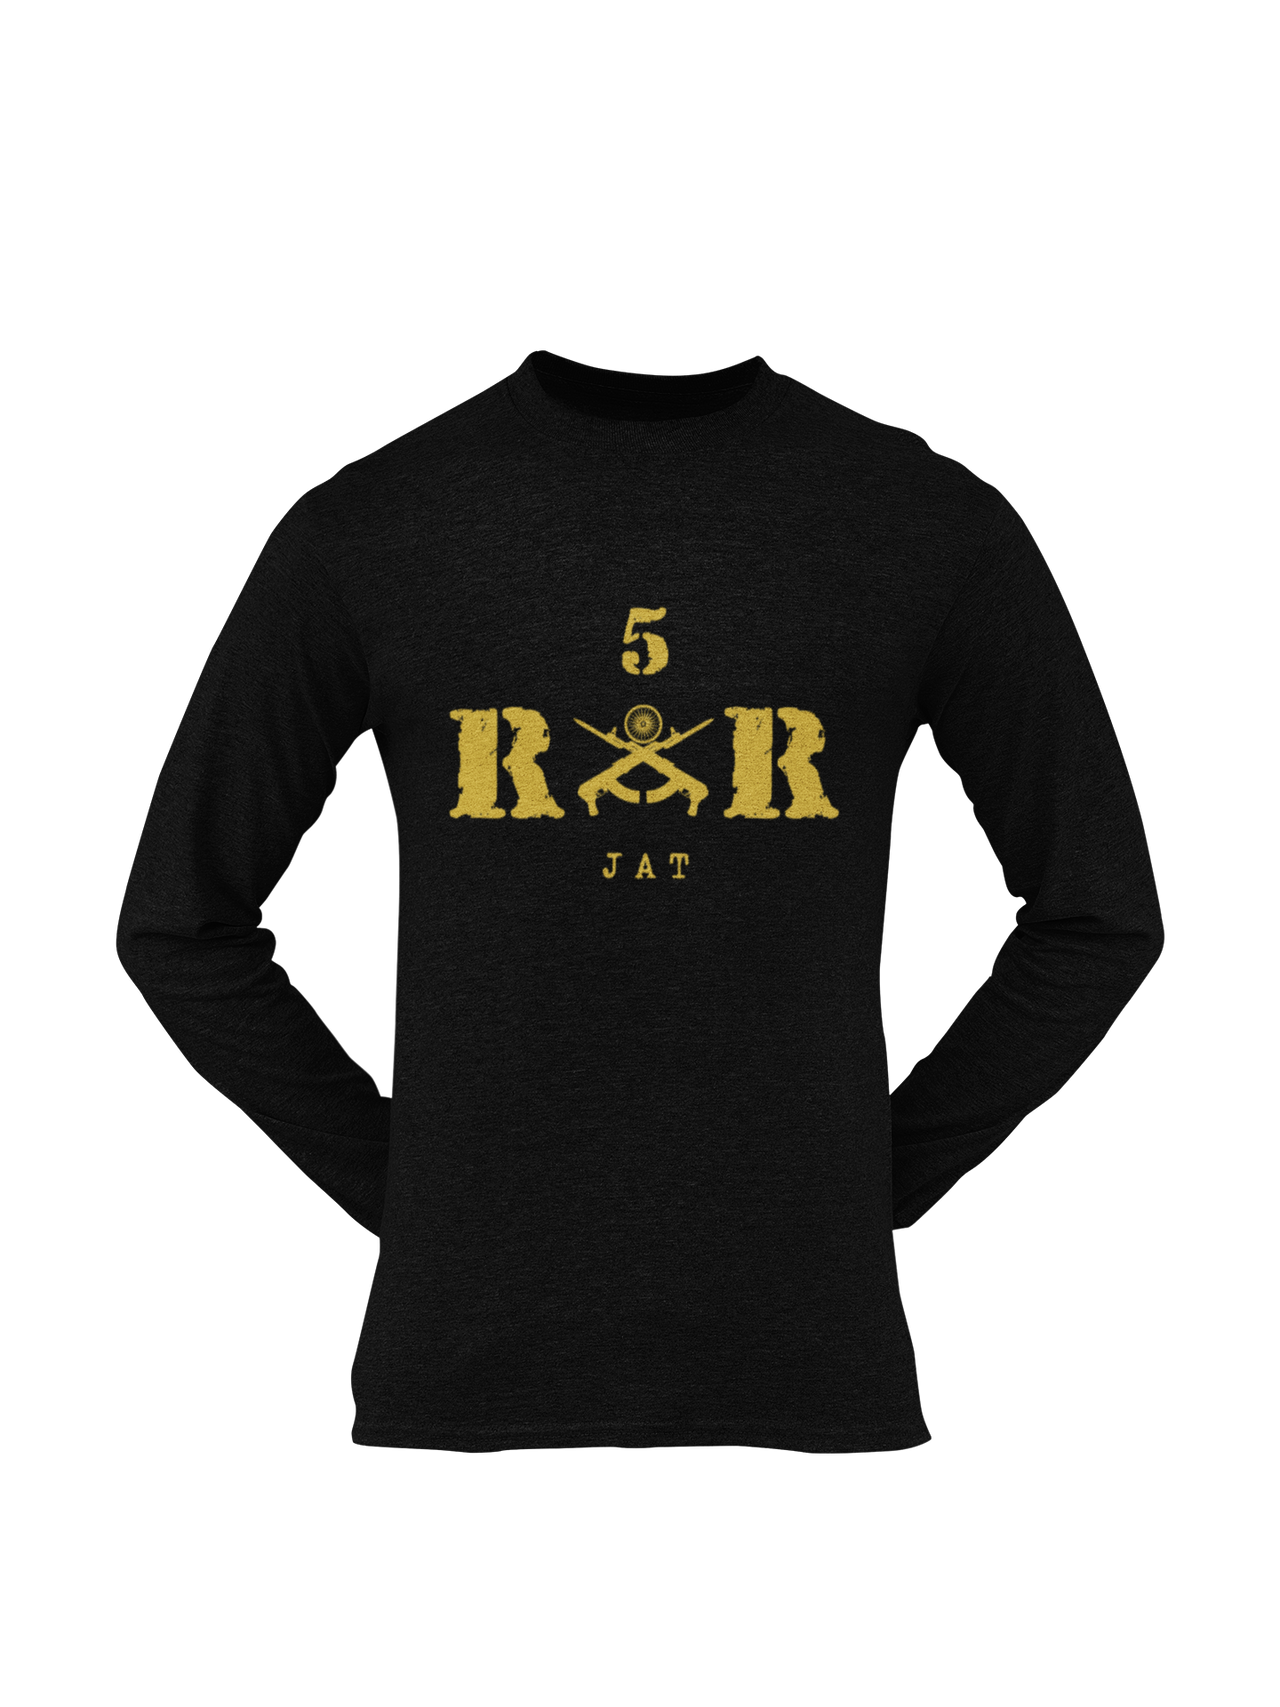 Rashtriya Rifles T-shirt - 5 RR Jat (Men)